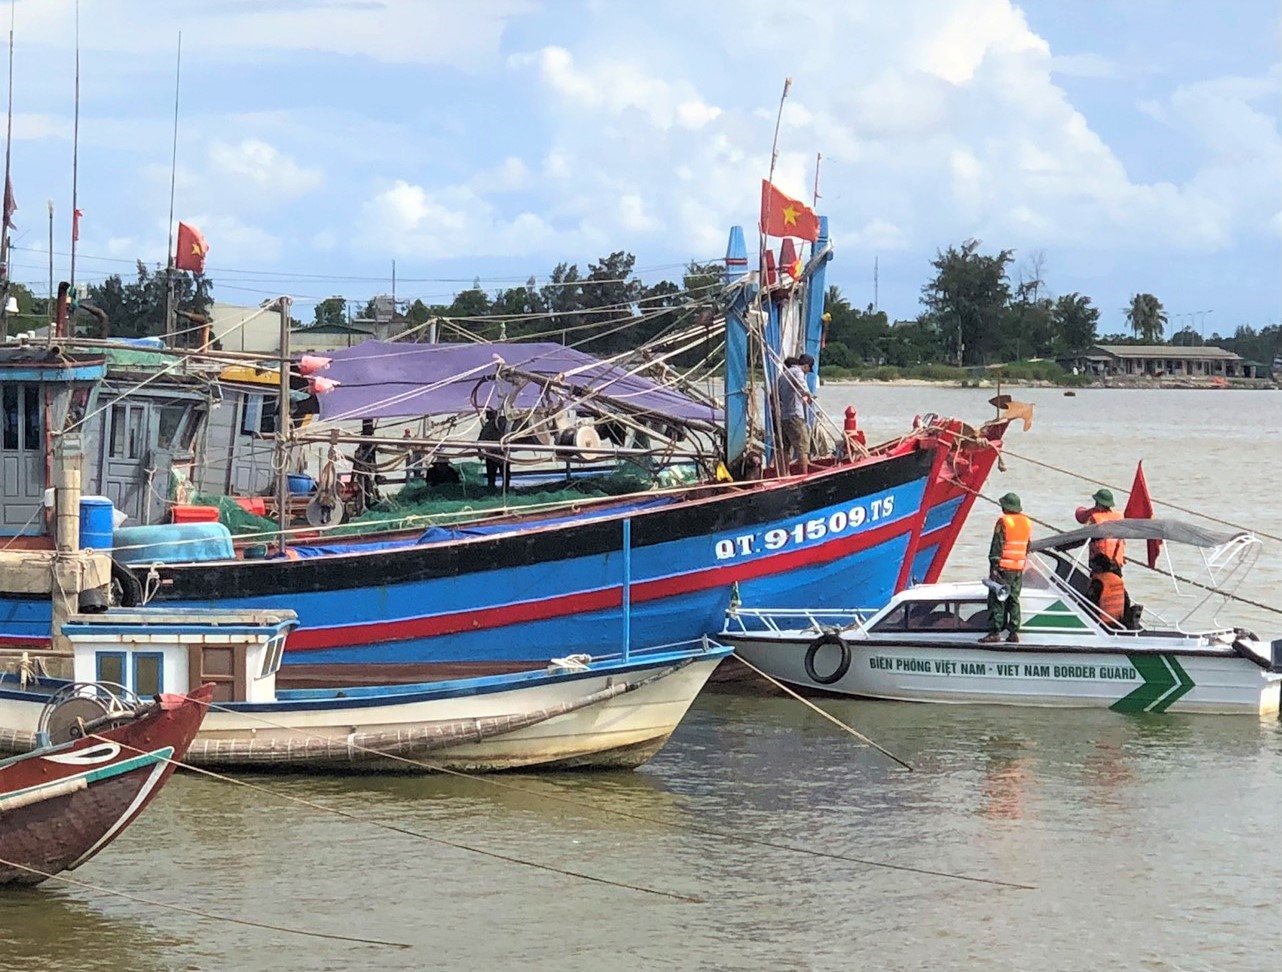 Đồn Biên phòng Cửa khẩu cảng Cửa Việt thông báo và hỗ trợ đưa tàu vào bờ trú ẩn.